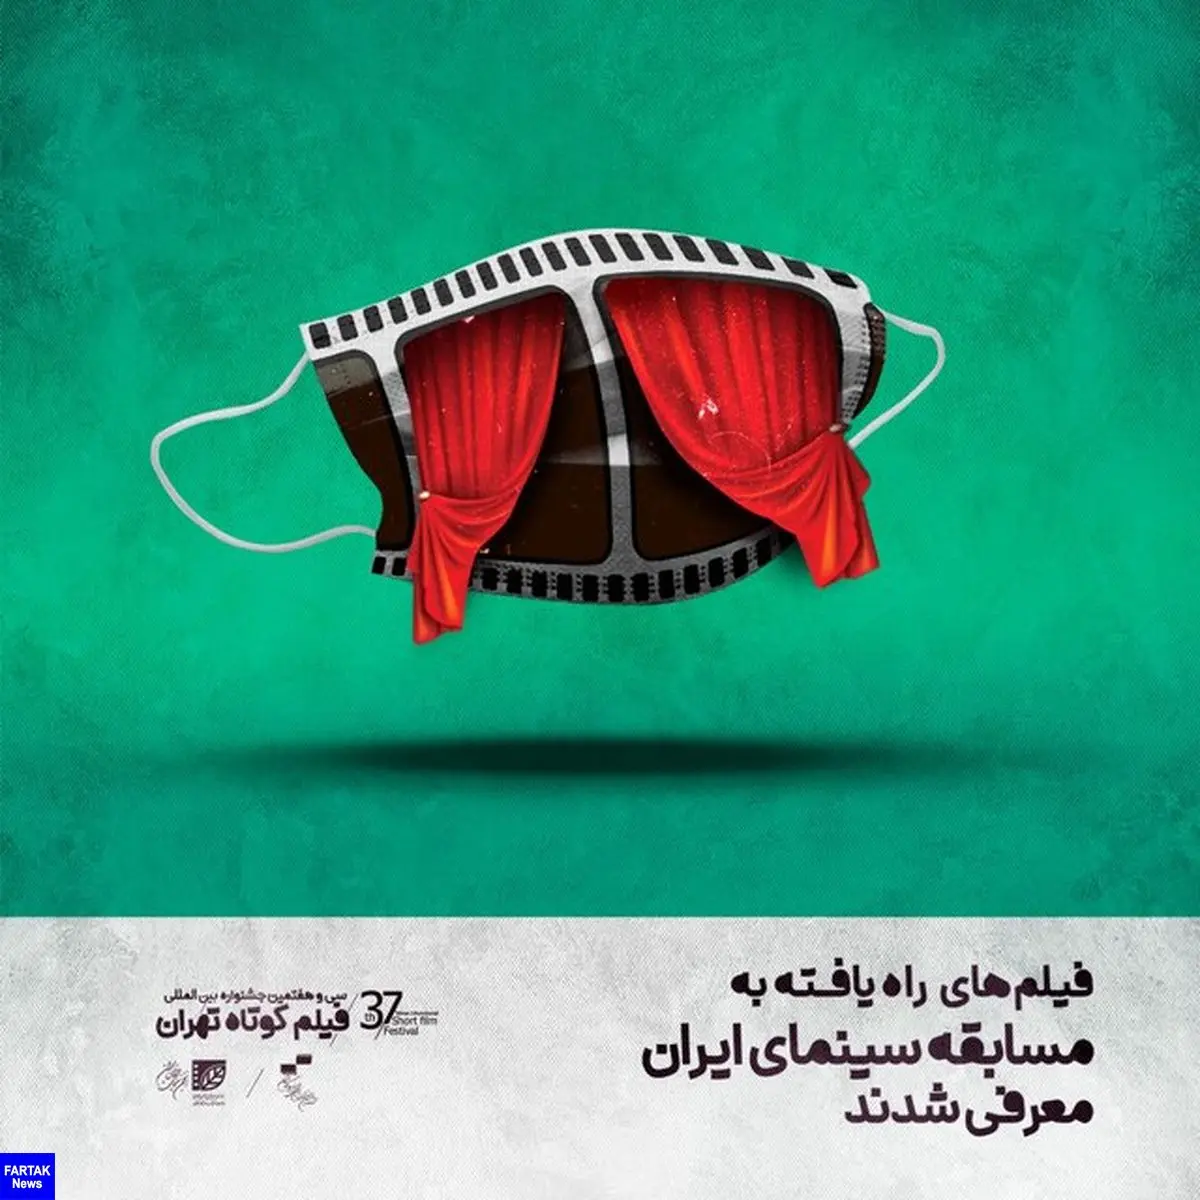 اسامی آثار بخش رقابتی جشنواره فیلم کوتاه تهران اعلام شد